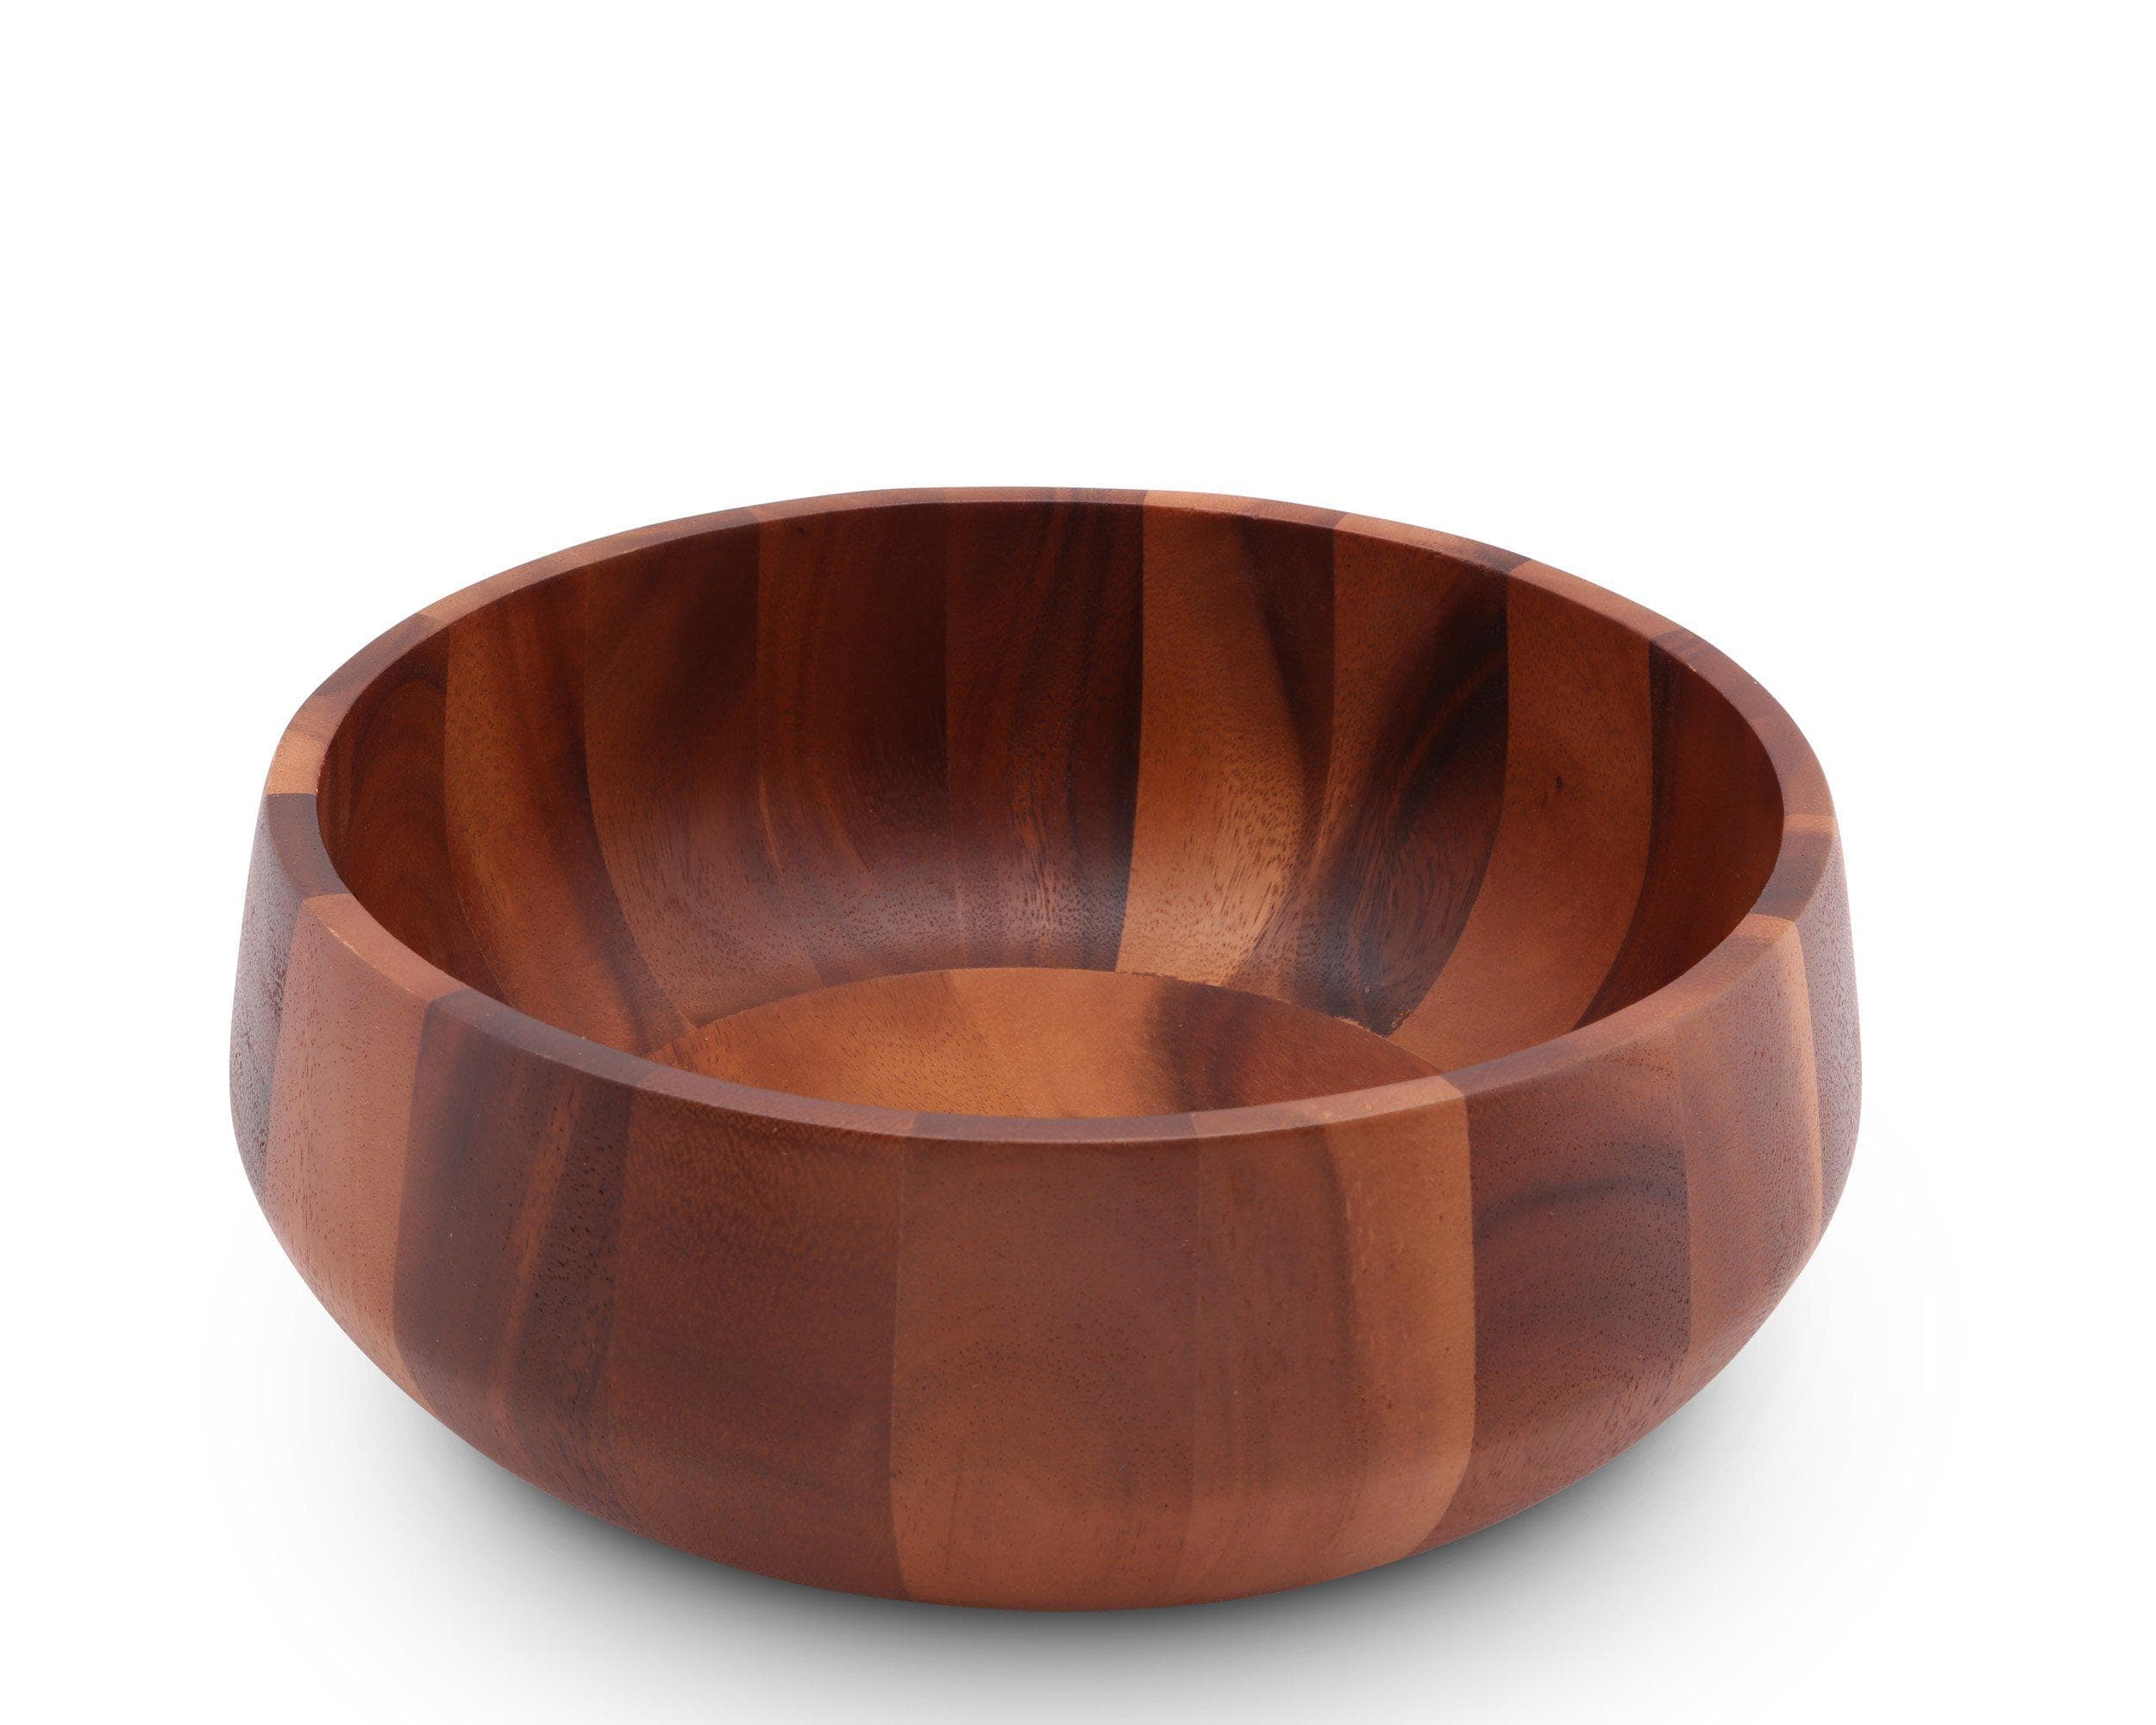 Large Salad Bowl, Wooden Bowl, Handmade Acacia Wood Big Bowl for